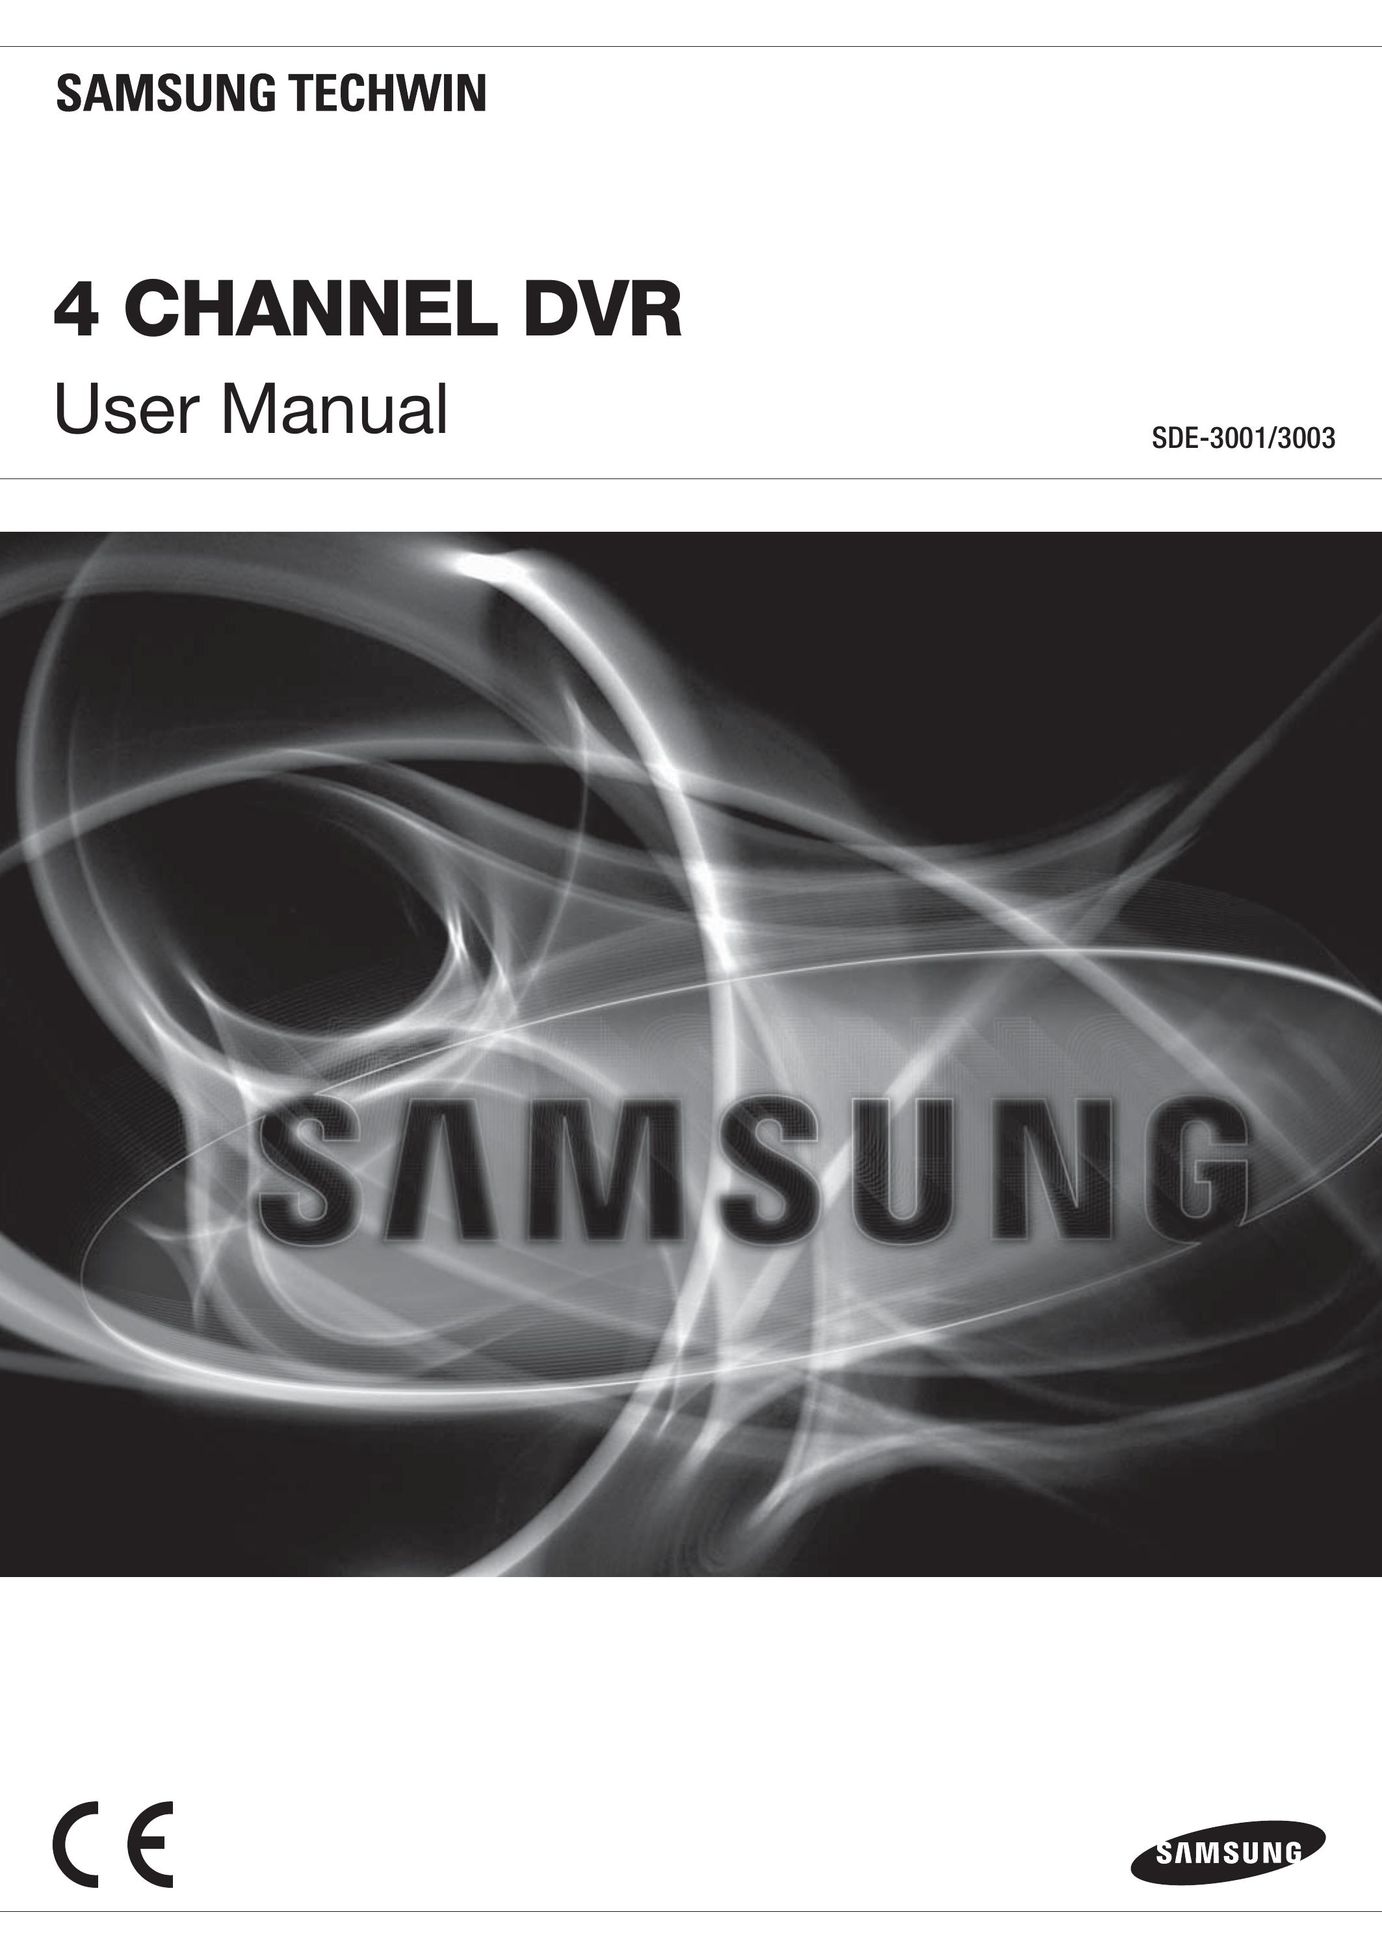 Samsung SDE-3003 DVR User Manual